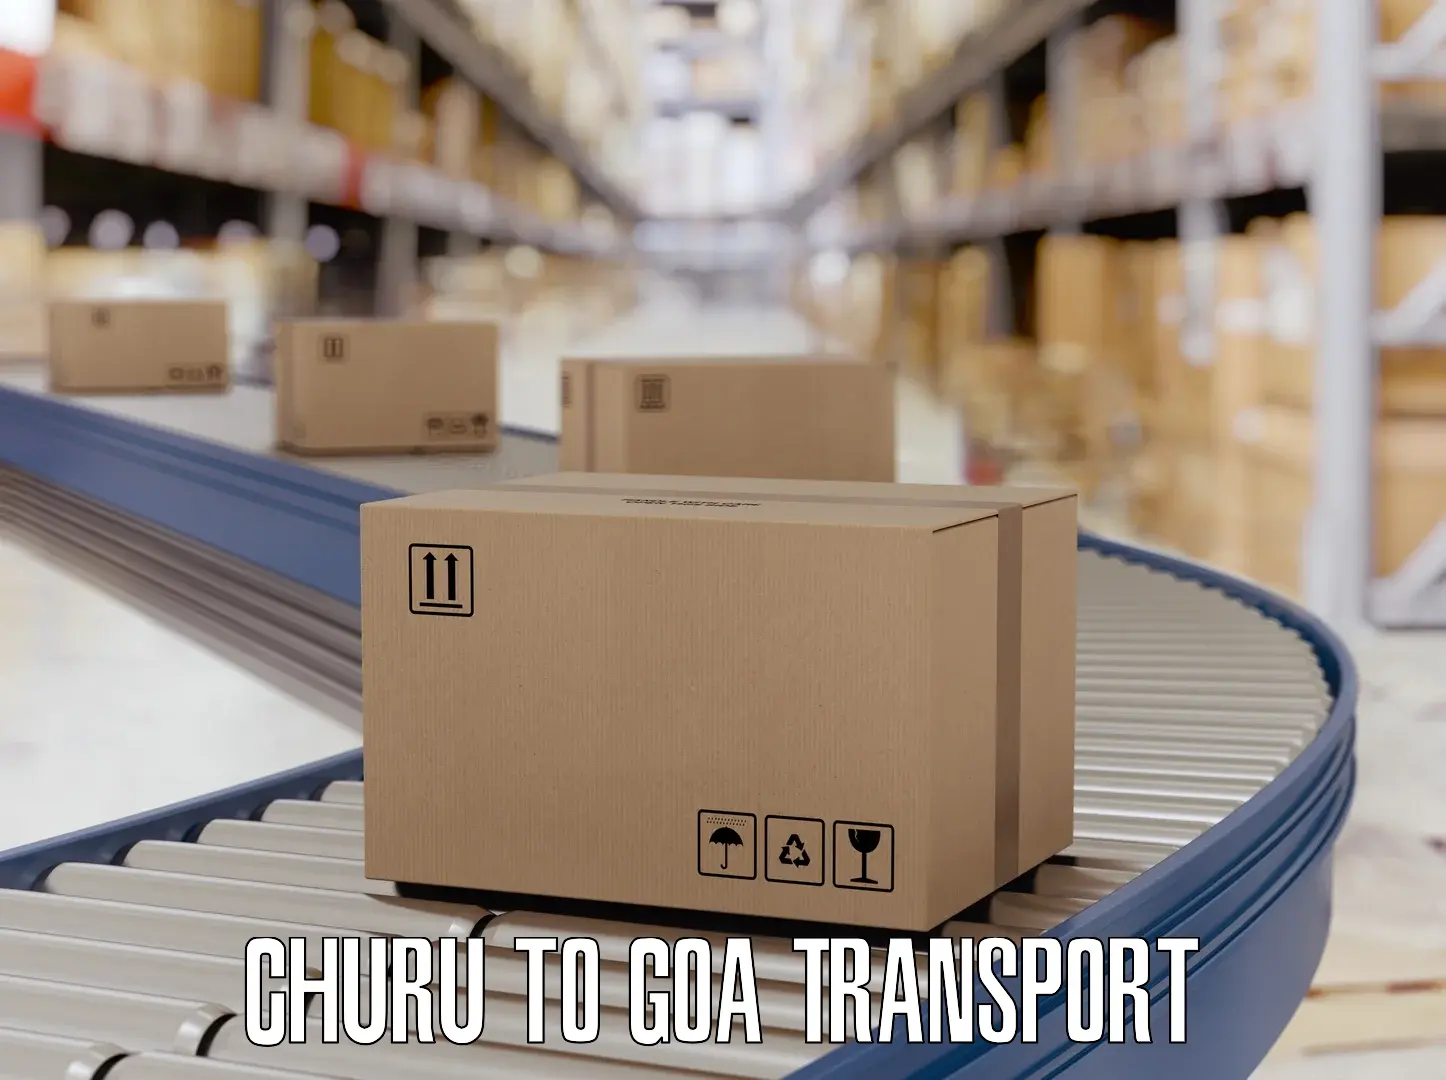 Furniture transport service Churu to NIT Goa